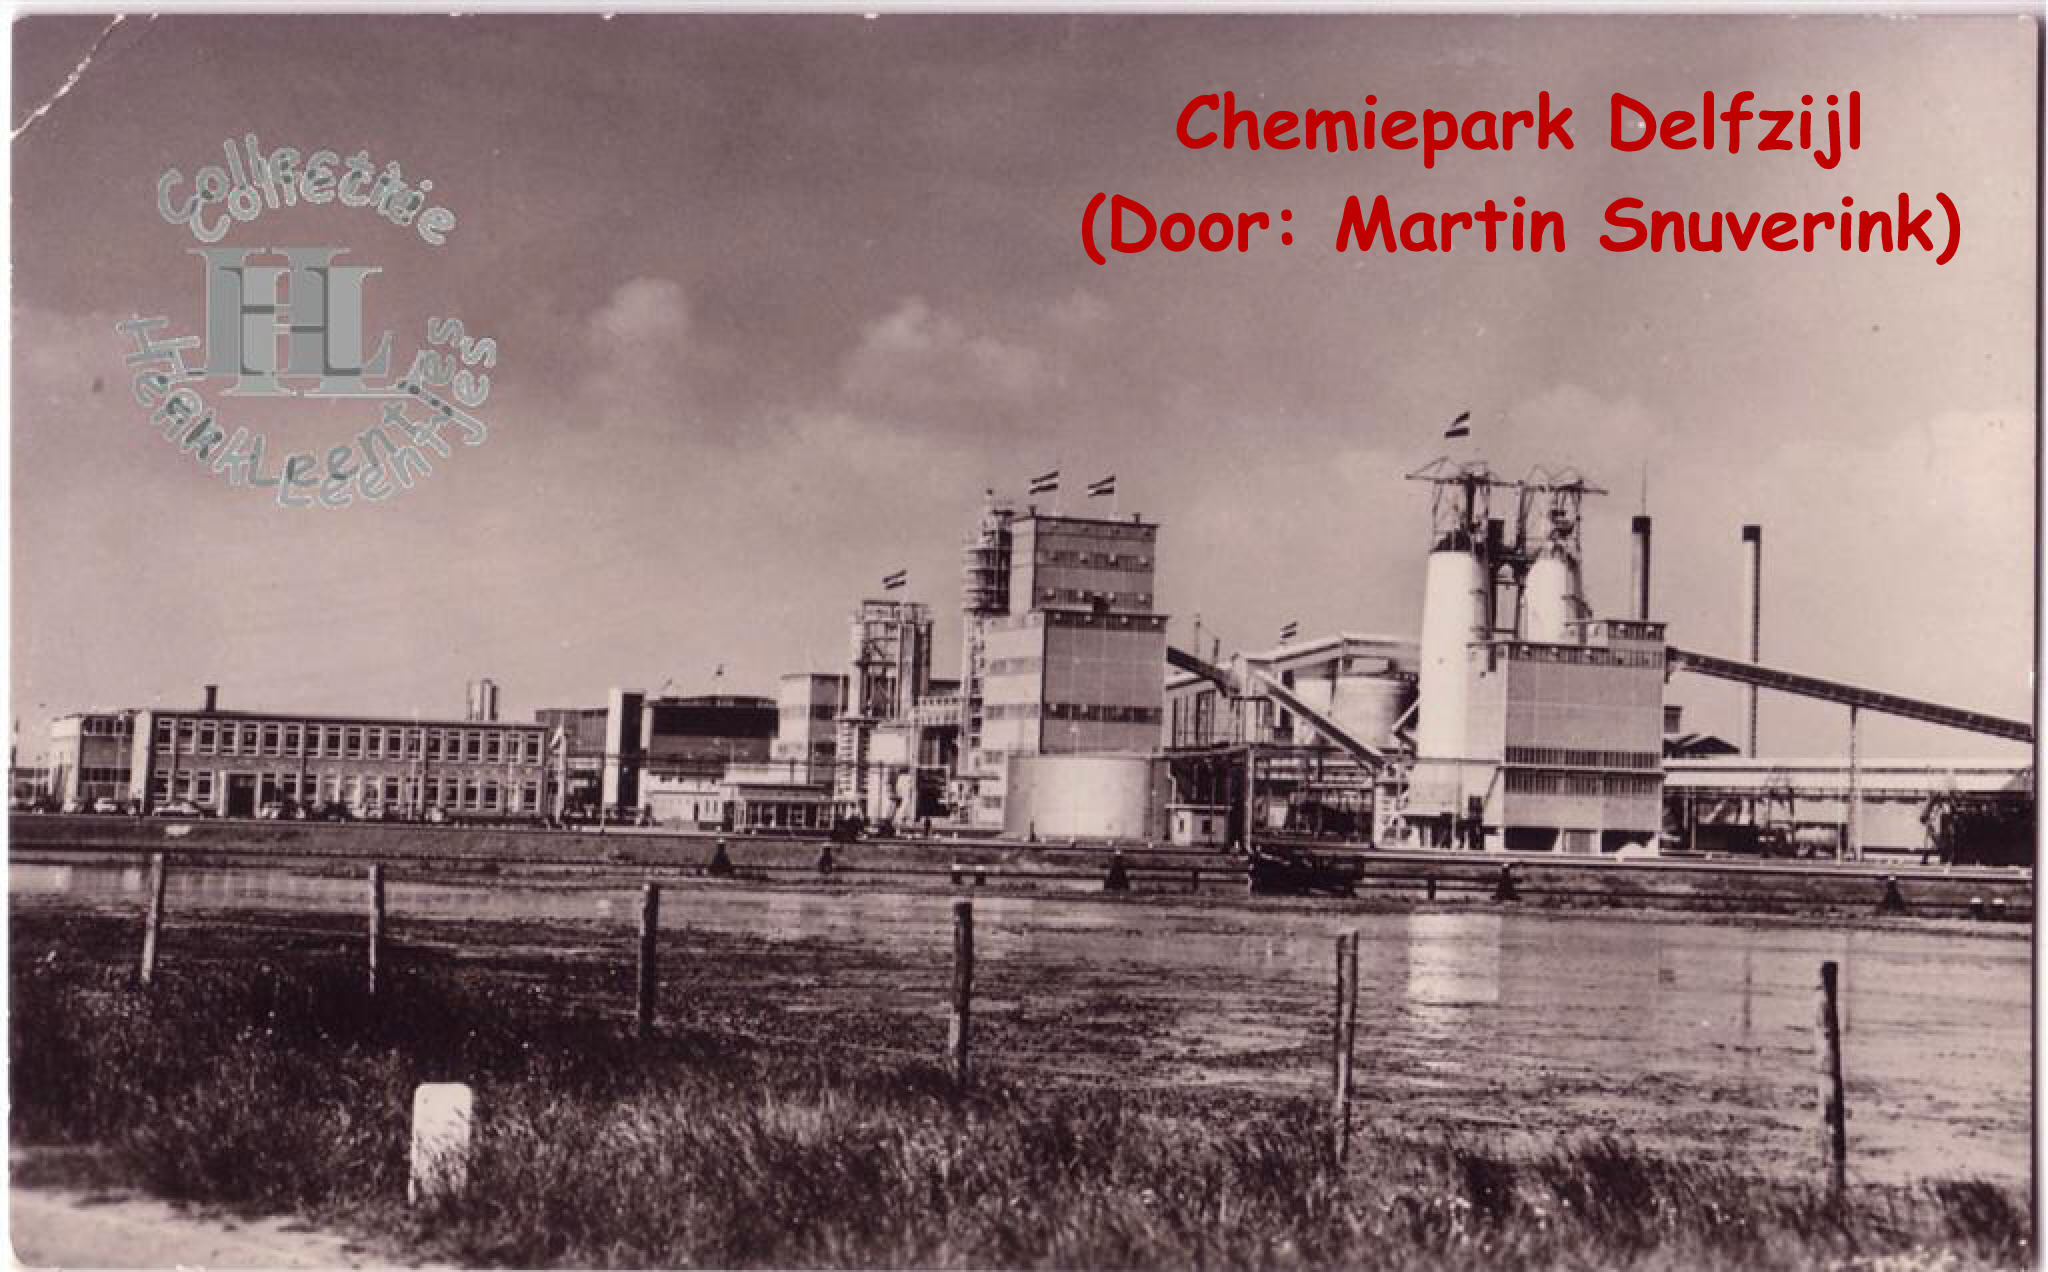 Sodafabriek Chemiepark Delfzijl (Door: Martin Snuverink)